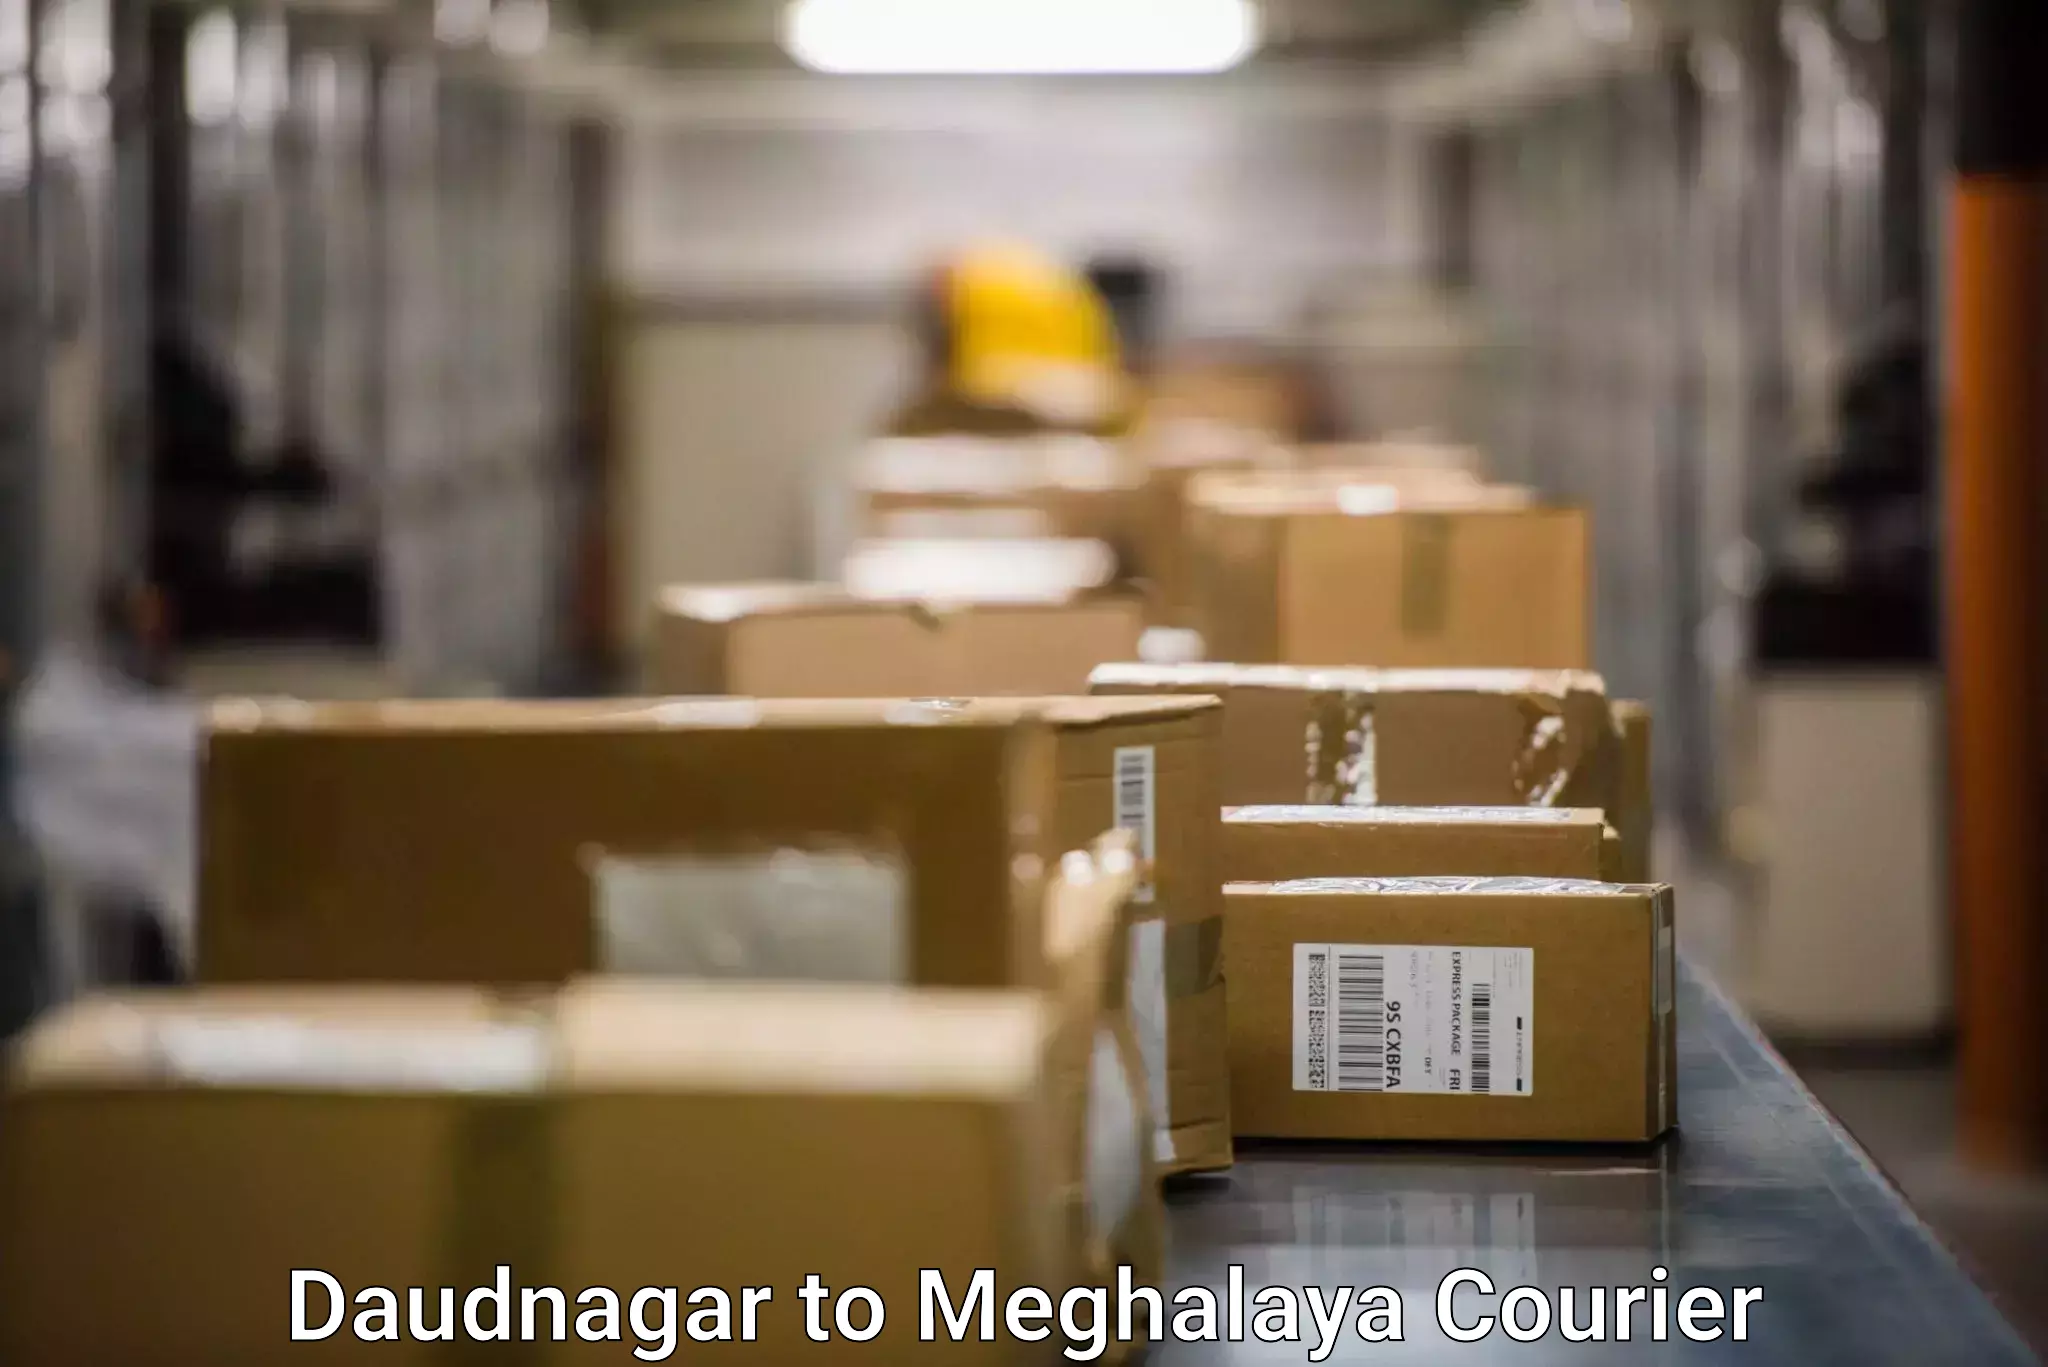 Nationwide delivery network Daudnagar to Shillong